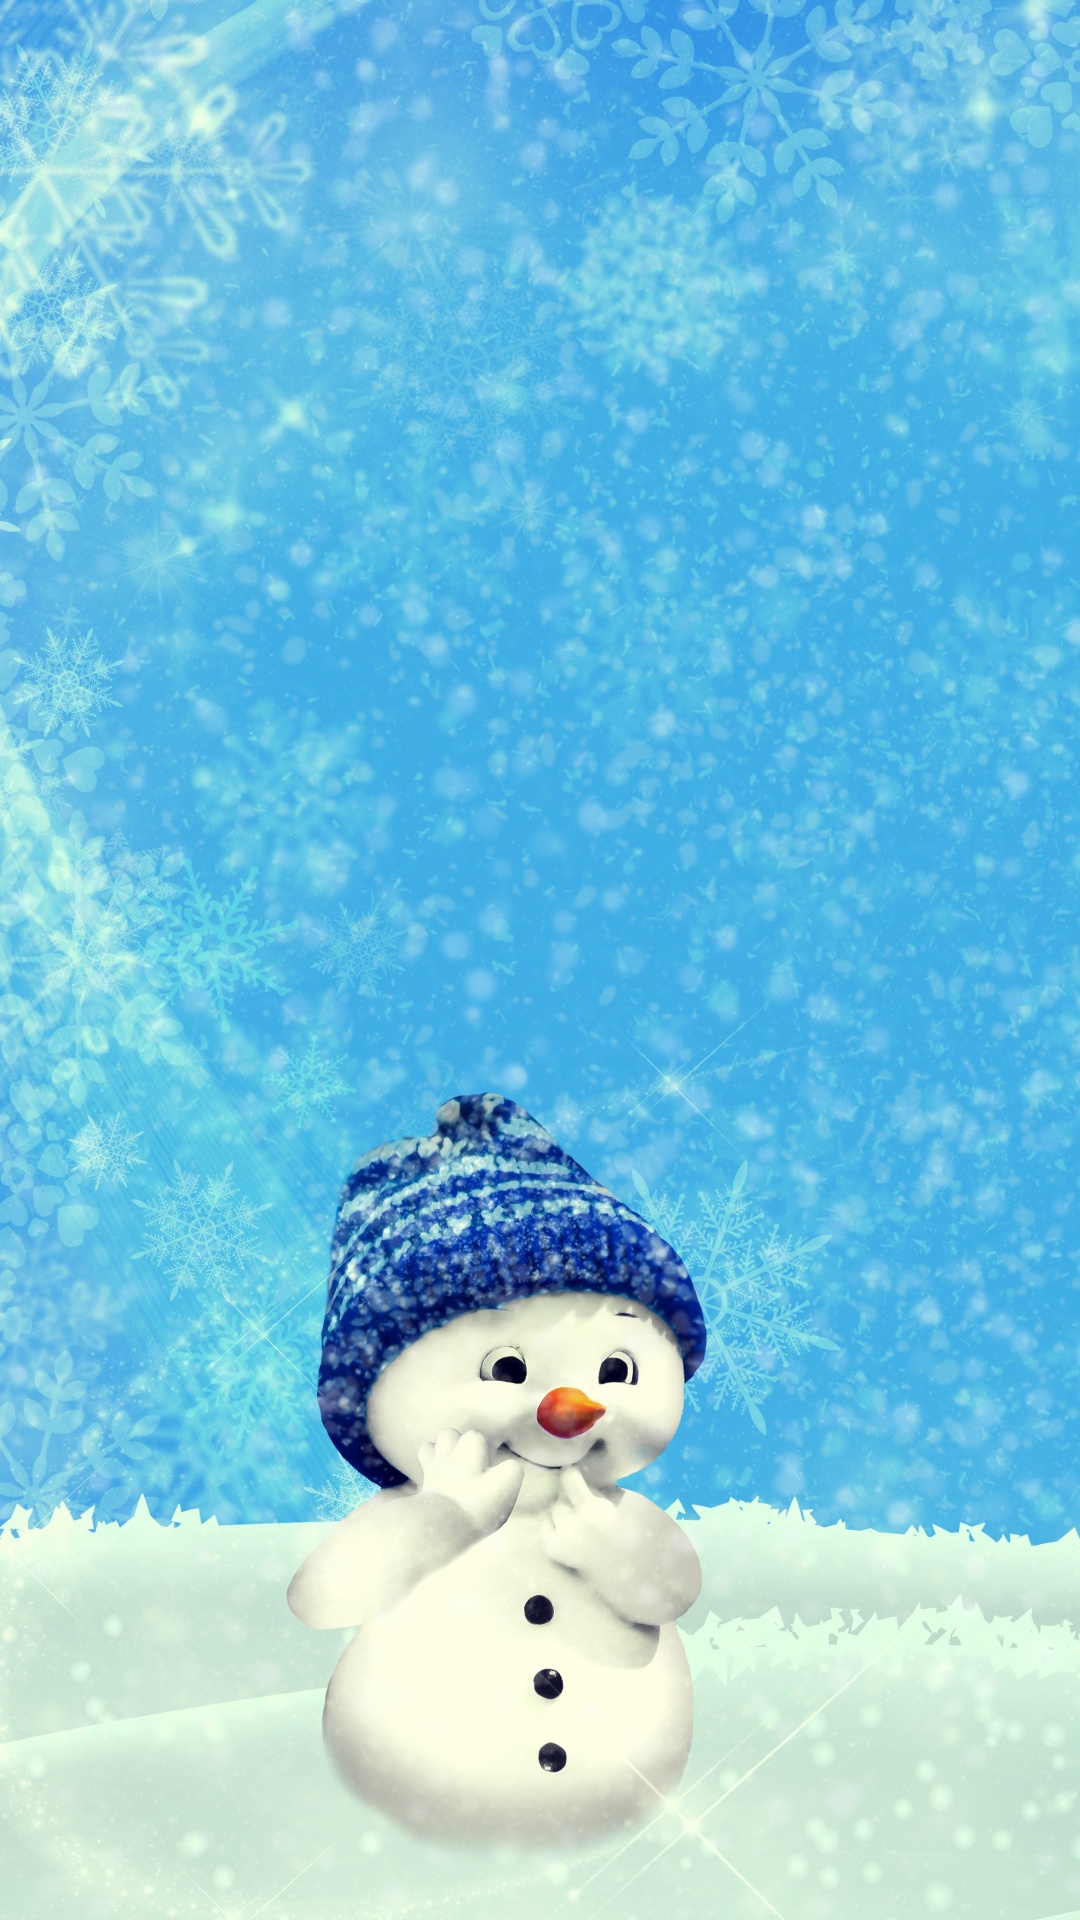 雪人, 圣诞节那天, 冬天, 冻结, 雪花 壁纸 1080x1920 允许